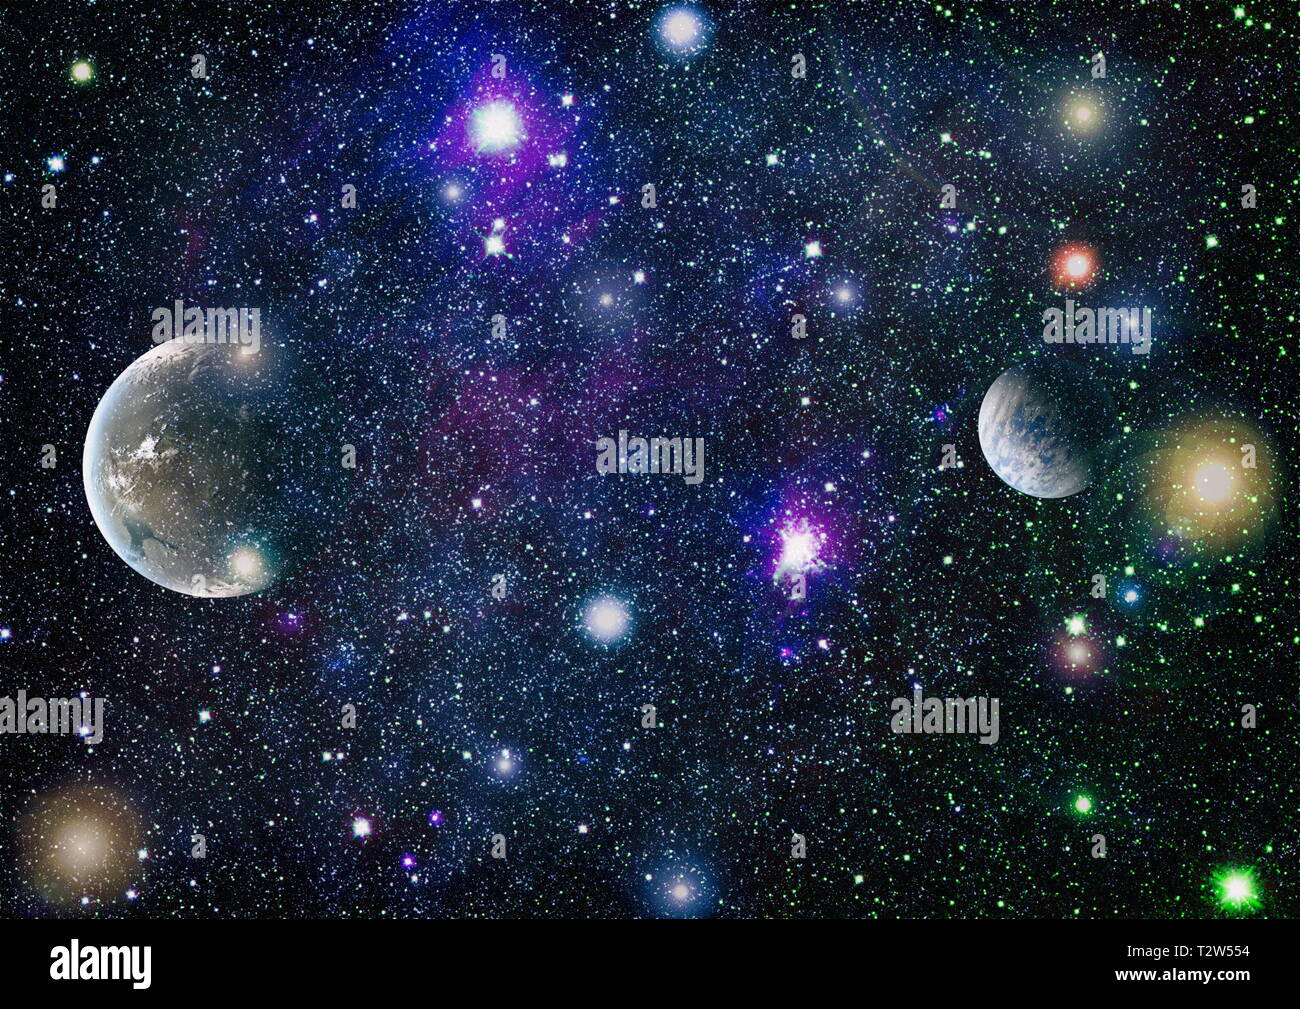 Planeten, Sterne und Galaxien im Weltraum zeigt die Schönheit des Weltraums. Elemente von der NASA eingerichtet Stockfoto